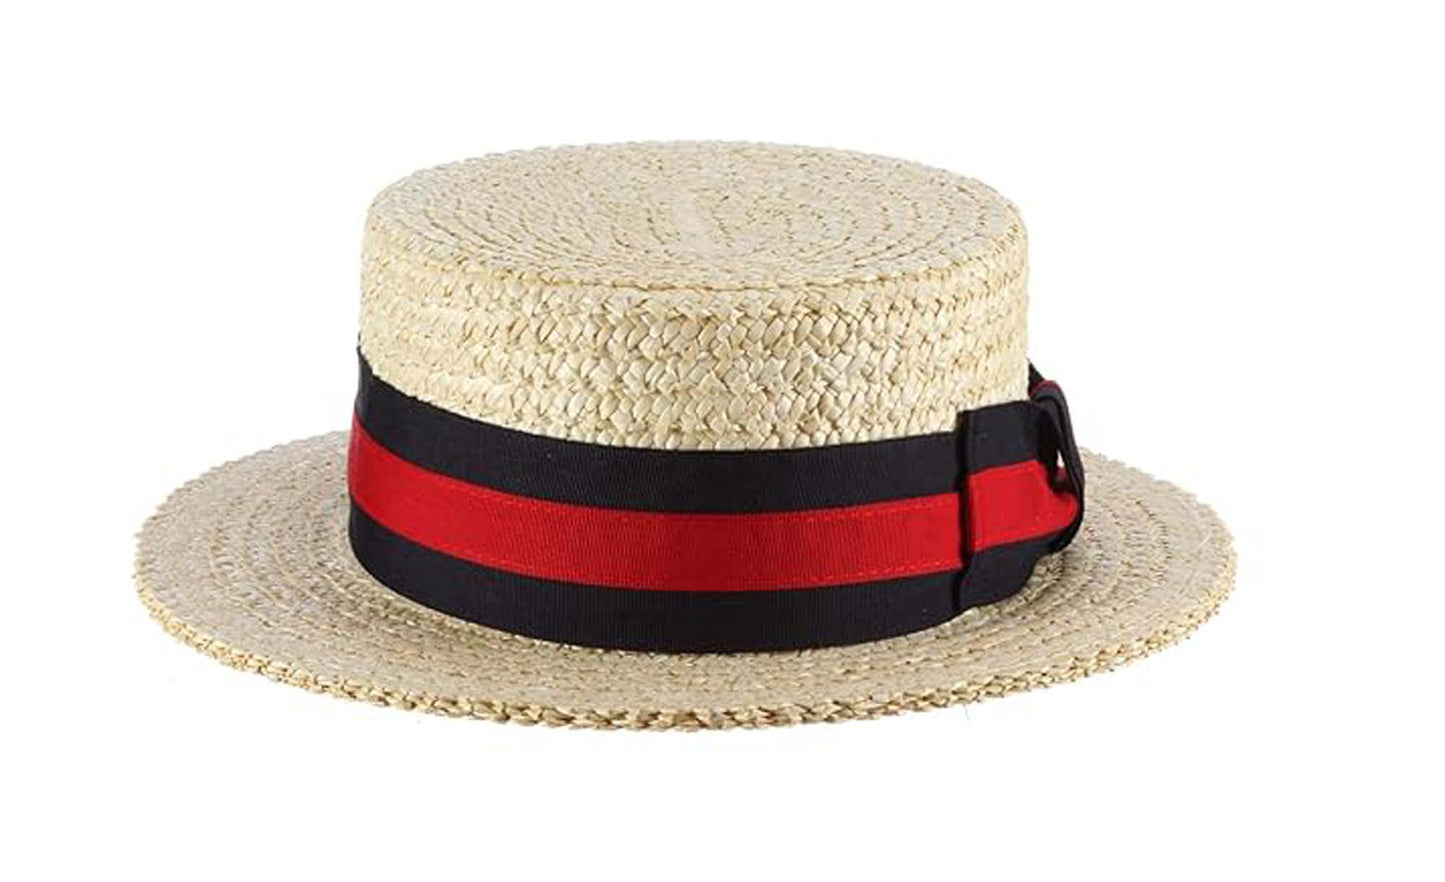 Scala "GONDOLA" Men's Dress Straw 1 Piece 10/11Mm Laichow Braid Boater Hat, #MS369